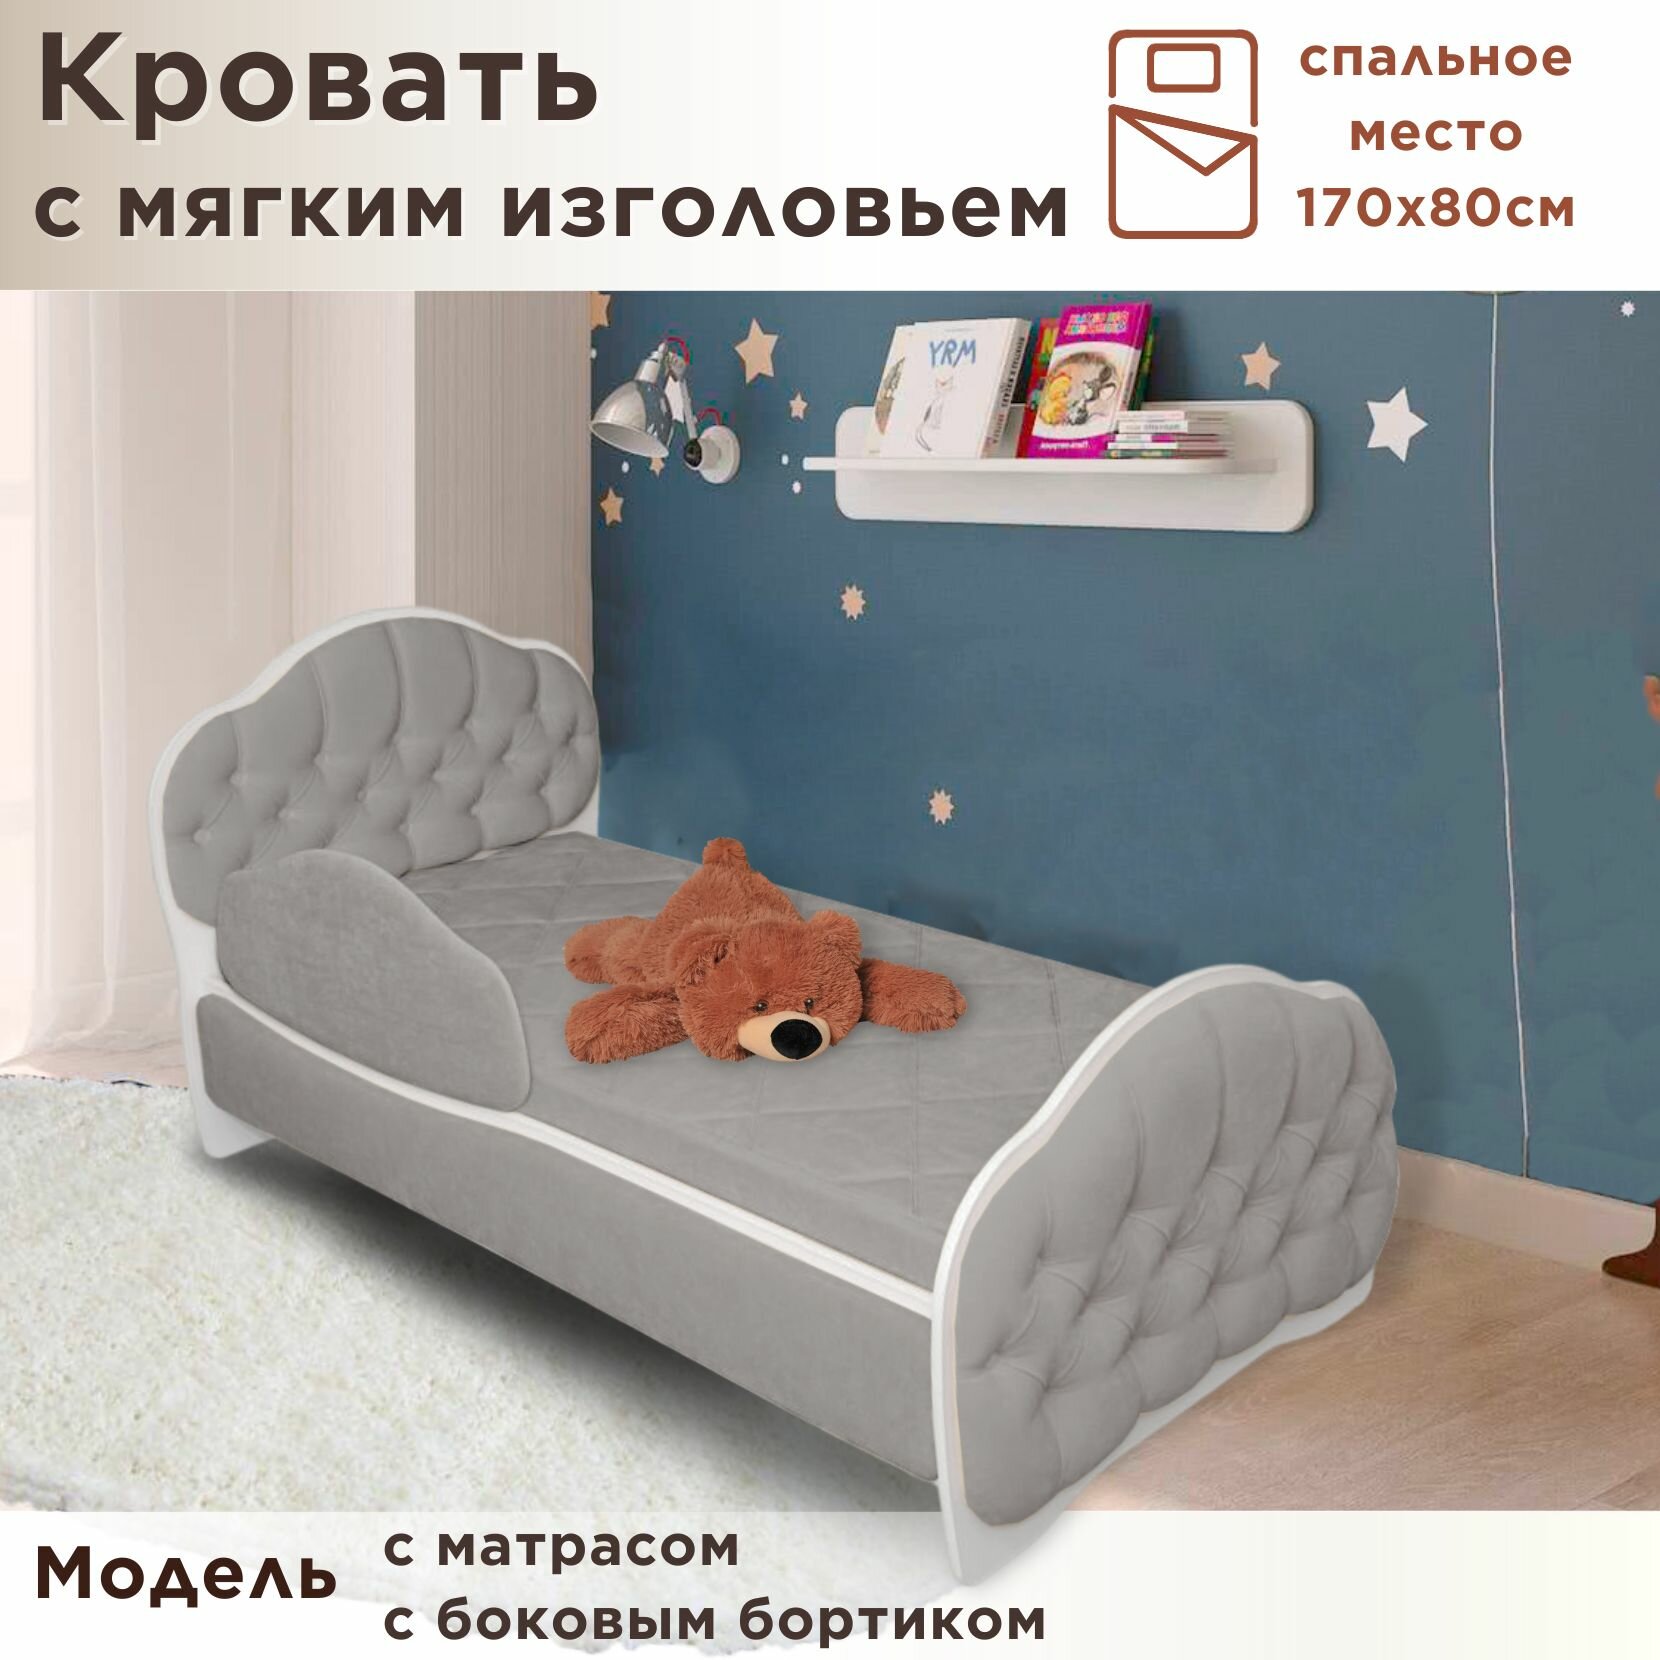 Кровать детская Гармония 170х80 см, Teddy 024, кровать + матрас + бортик